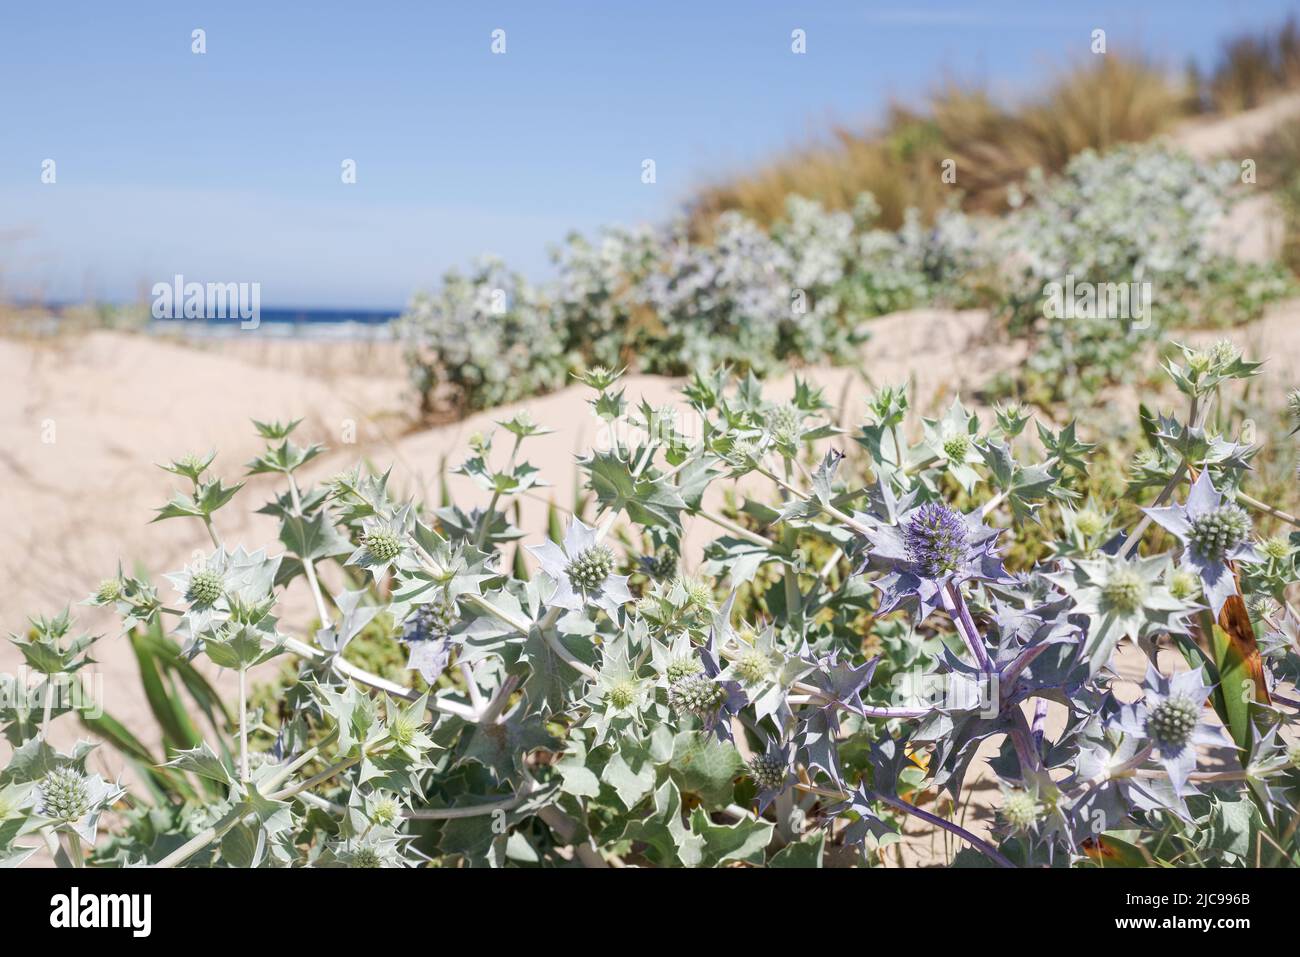 La plage de Praia da Amoreira abrite un certain nombre d'espèces de plantes côtières telles que l'eryngium maritimum - Algarve, Portugal Banque D'Images